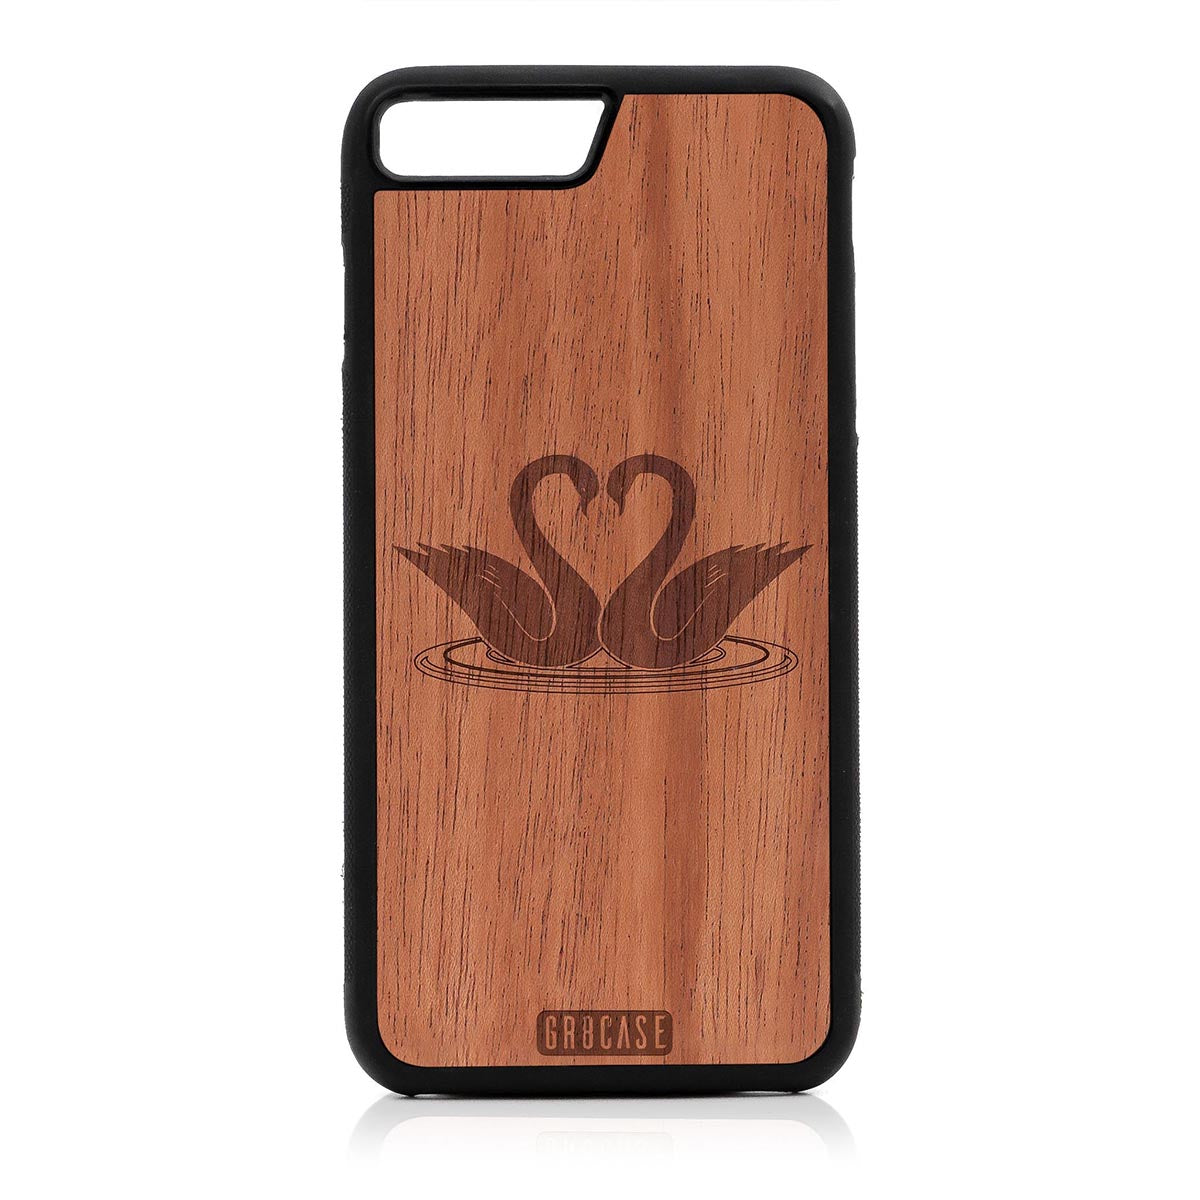 Swans Design Wood Case For iPhone 7 Plus / 8 Plus